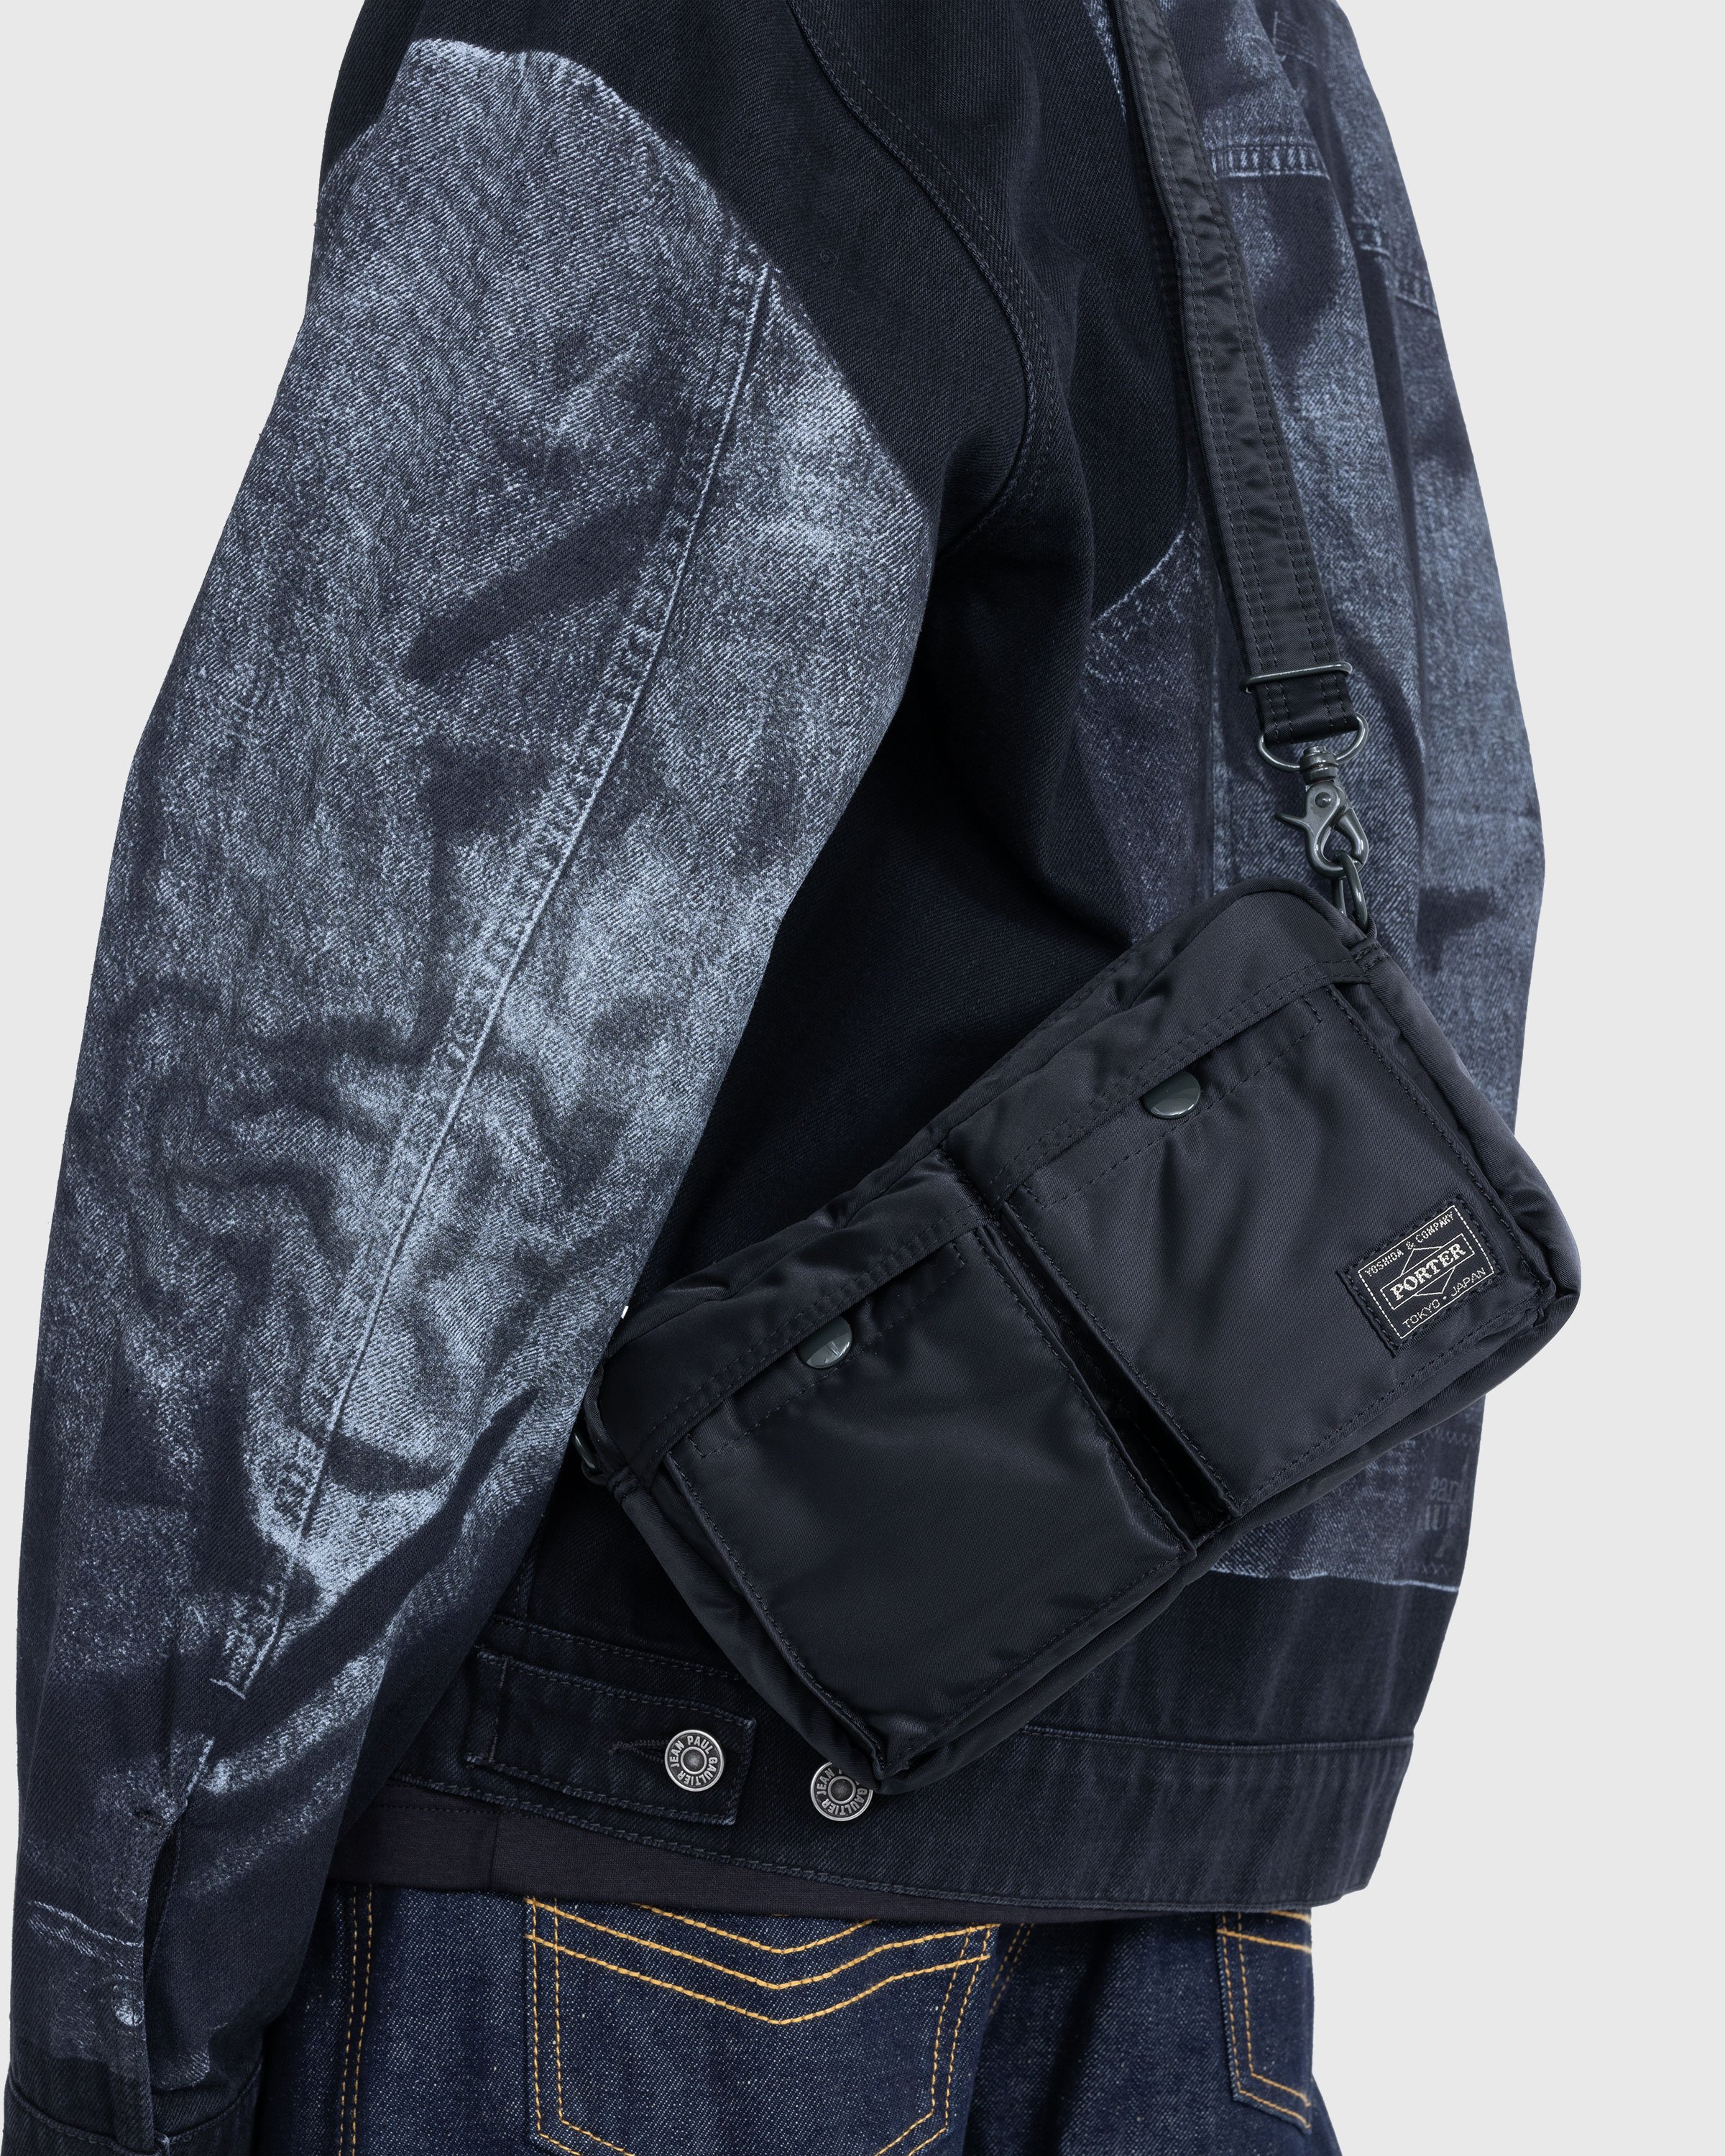 Porter-Yoshida & Co. - Tanker Shoulder Bag Black - Accessories - Black - Image 5